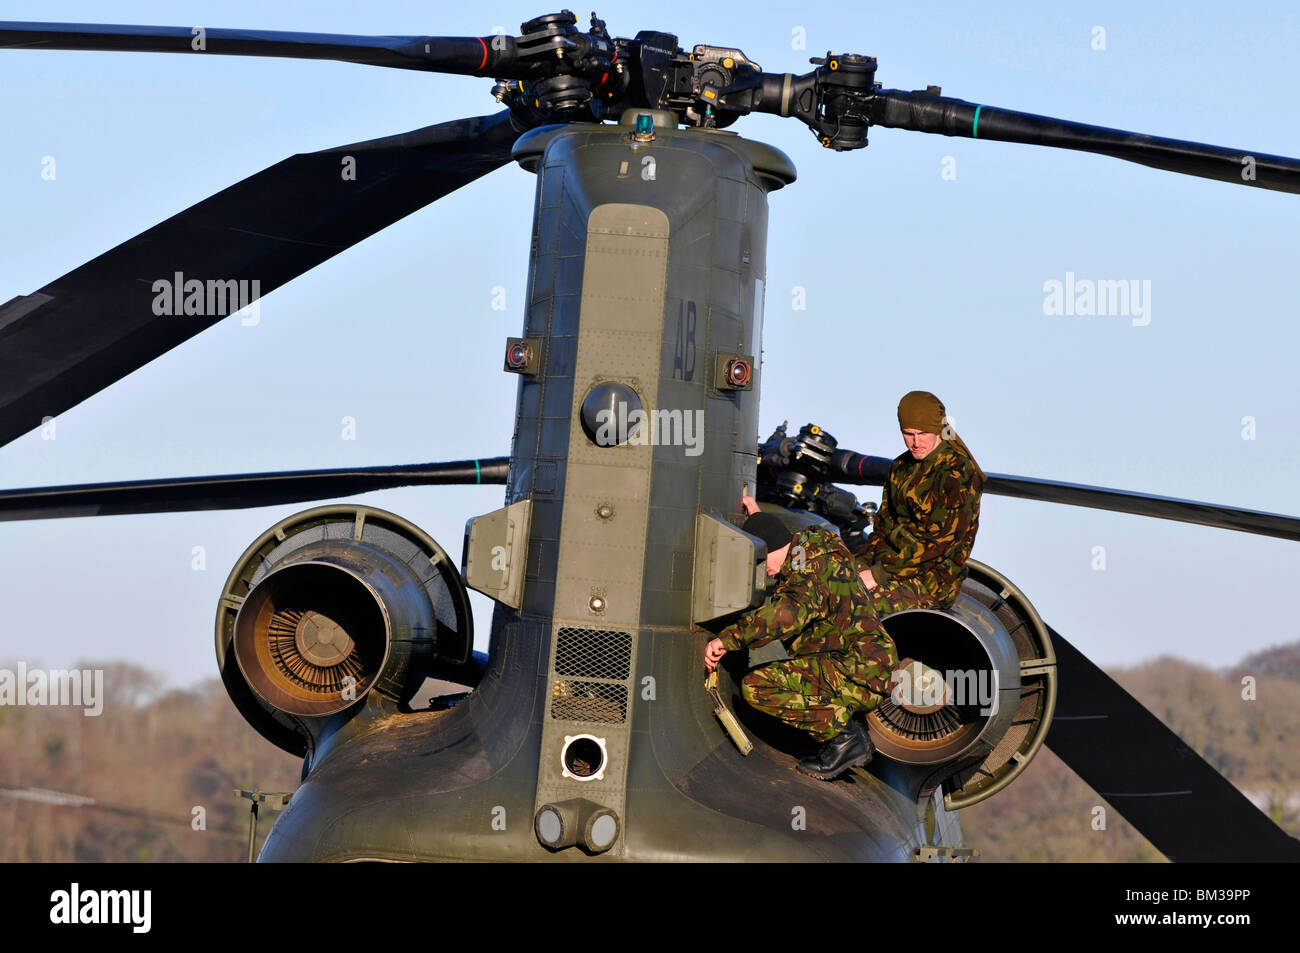 Hélicoptère Hélicoptère Chinook, ingénieurs ou régler un problème mécanique avec le moteur Banque D'Images